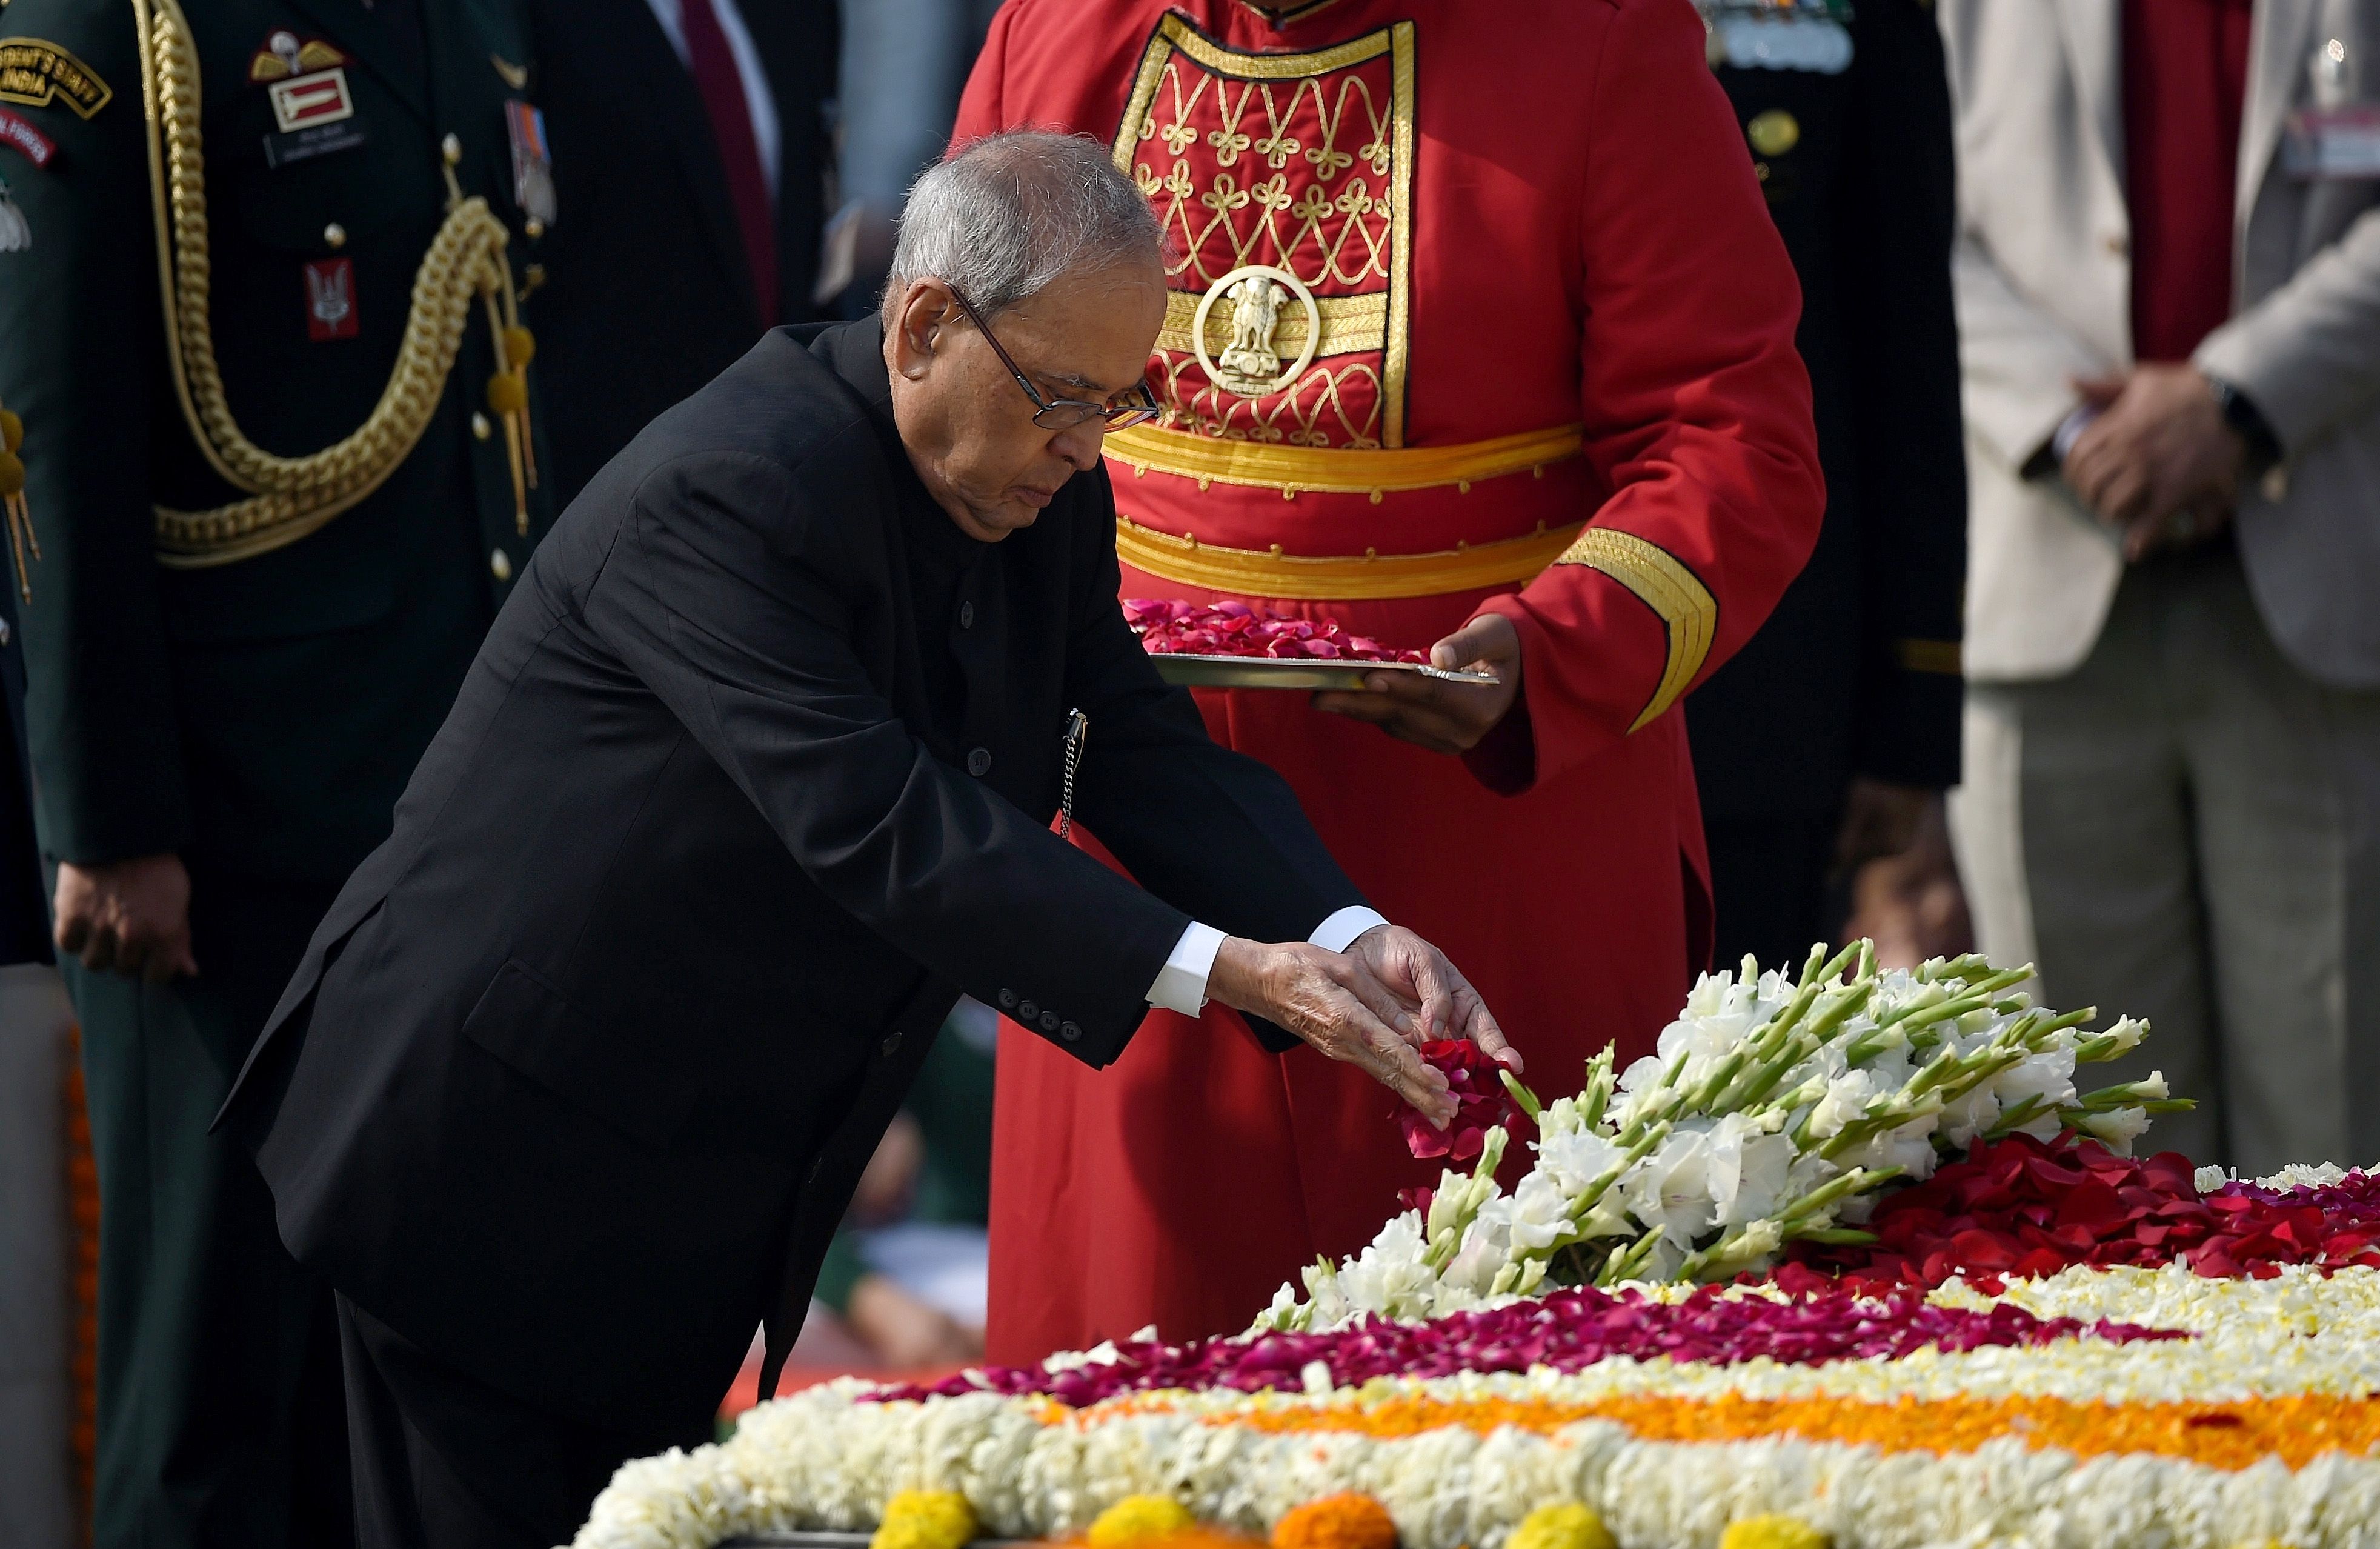 الرئيس الهندى براناب موخرجى يضع باقة ورد على النصب التذكارى للمهاتما غاندى فى ذكرى وفاته